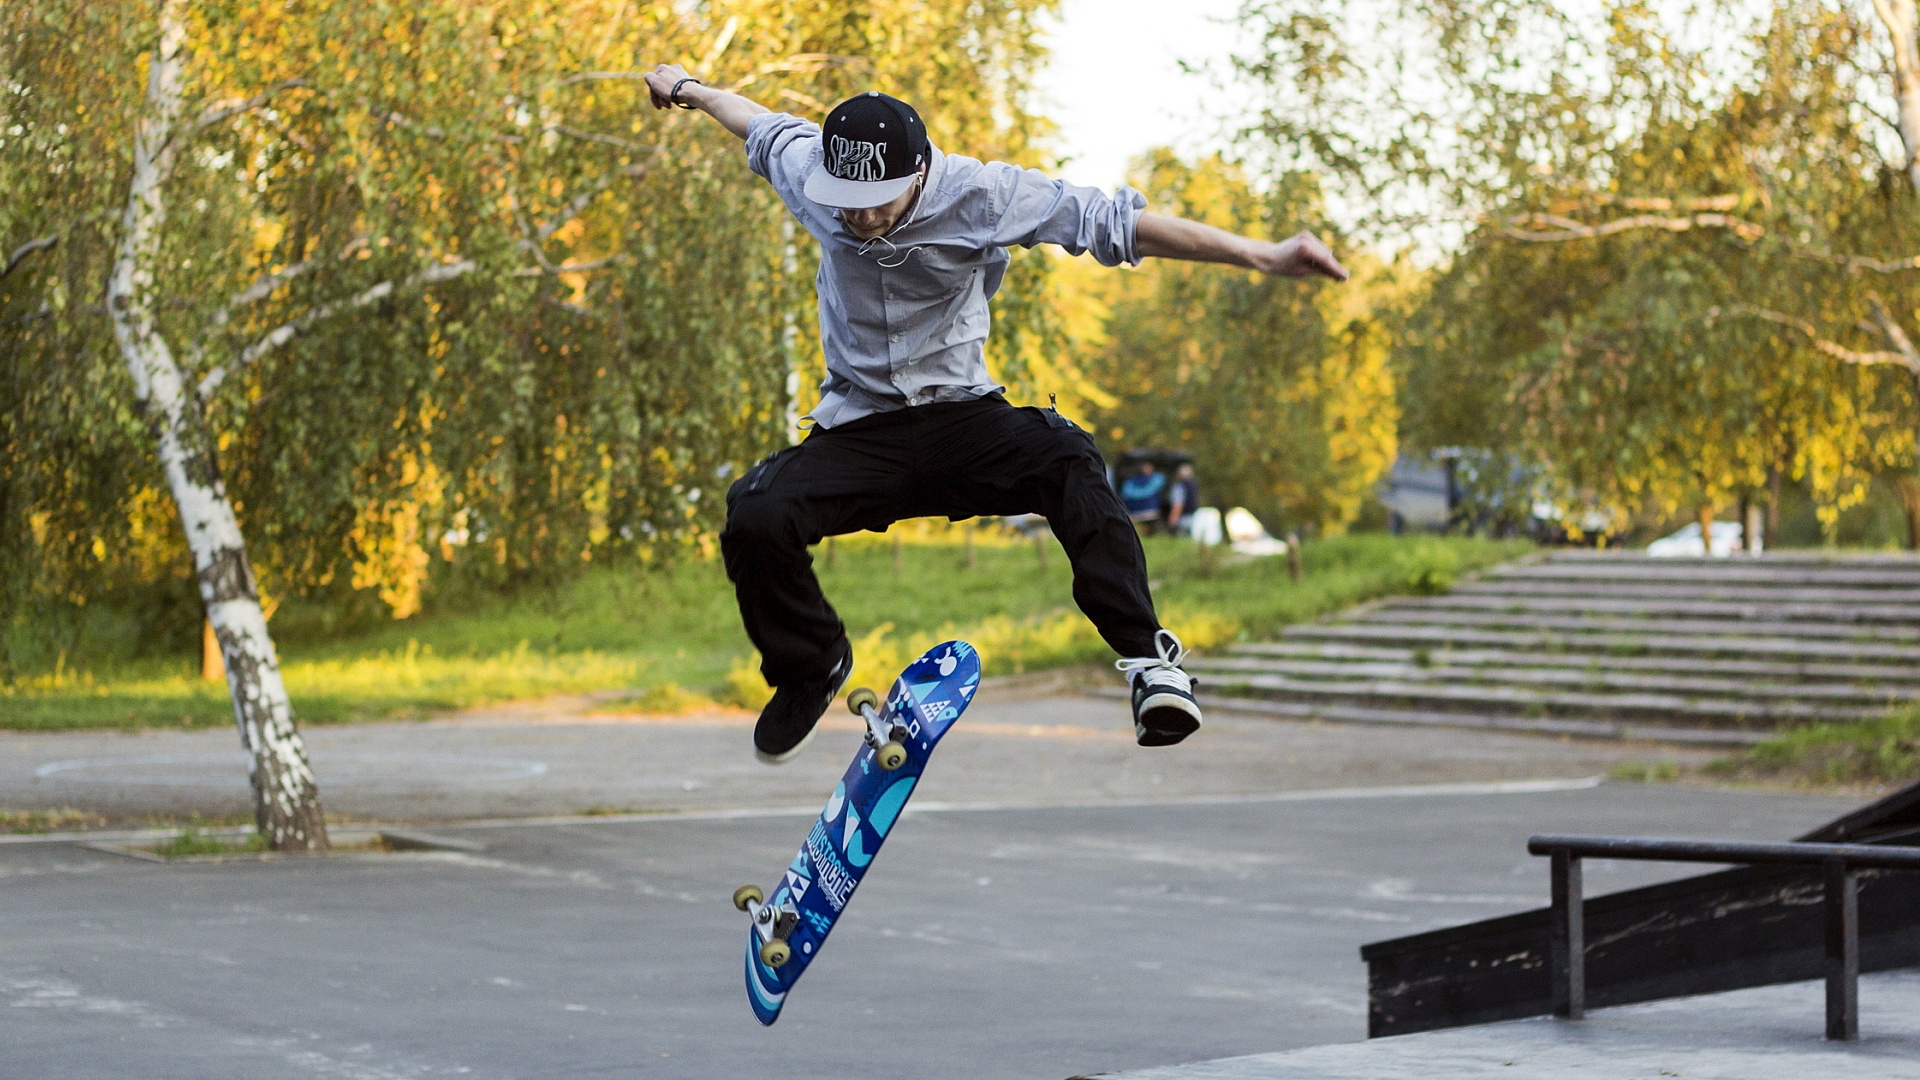 coole skateboard tapeten,skateboarding,skateboard,kickflip,sport,sportausrüstung